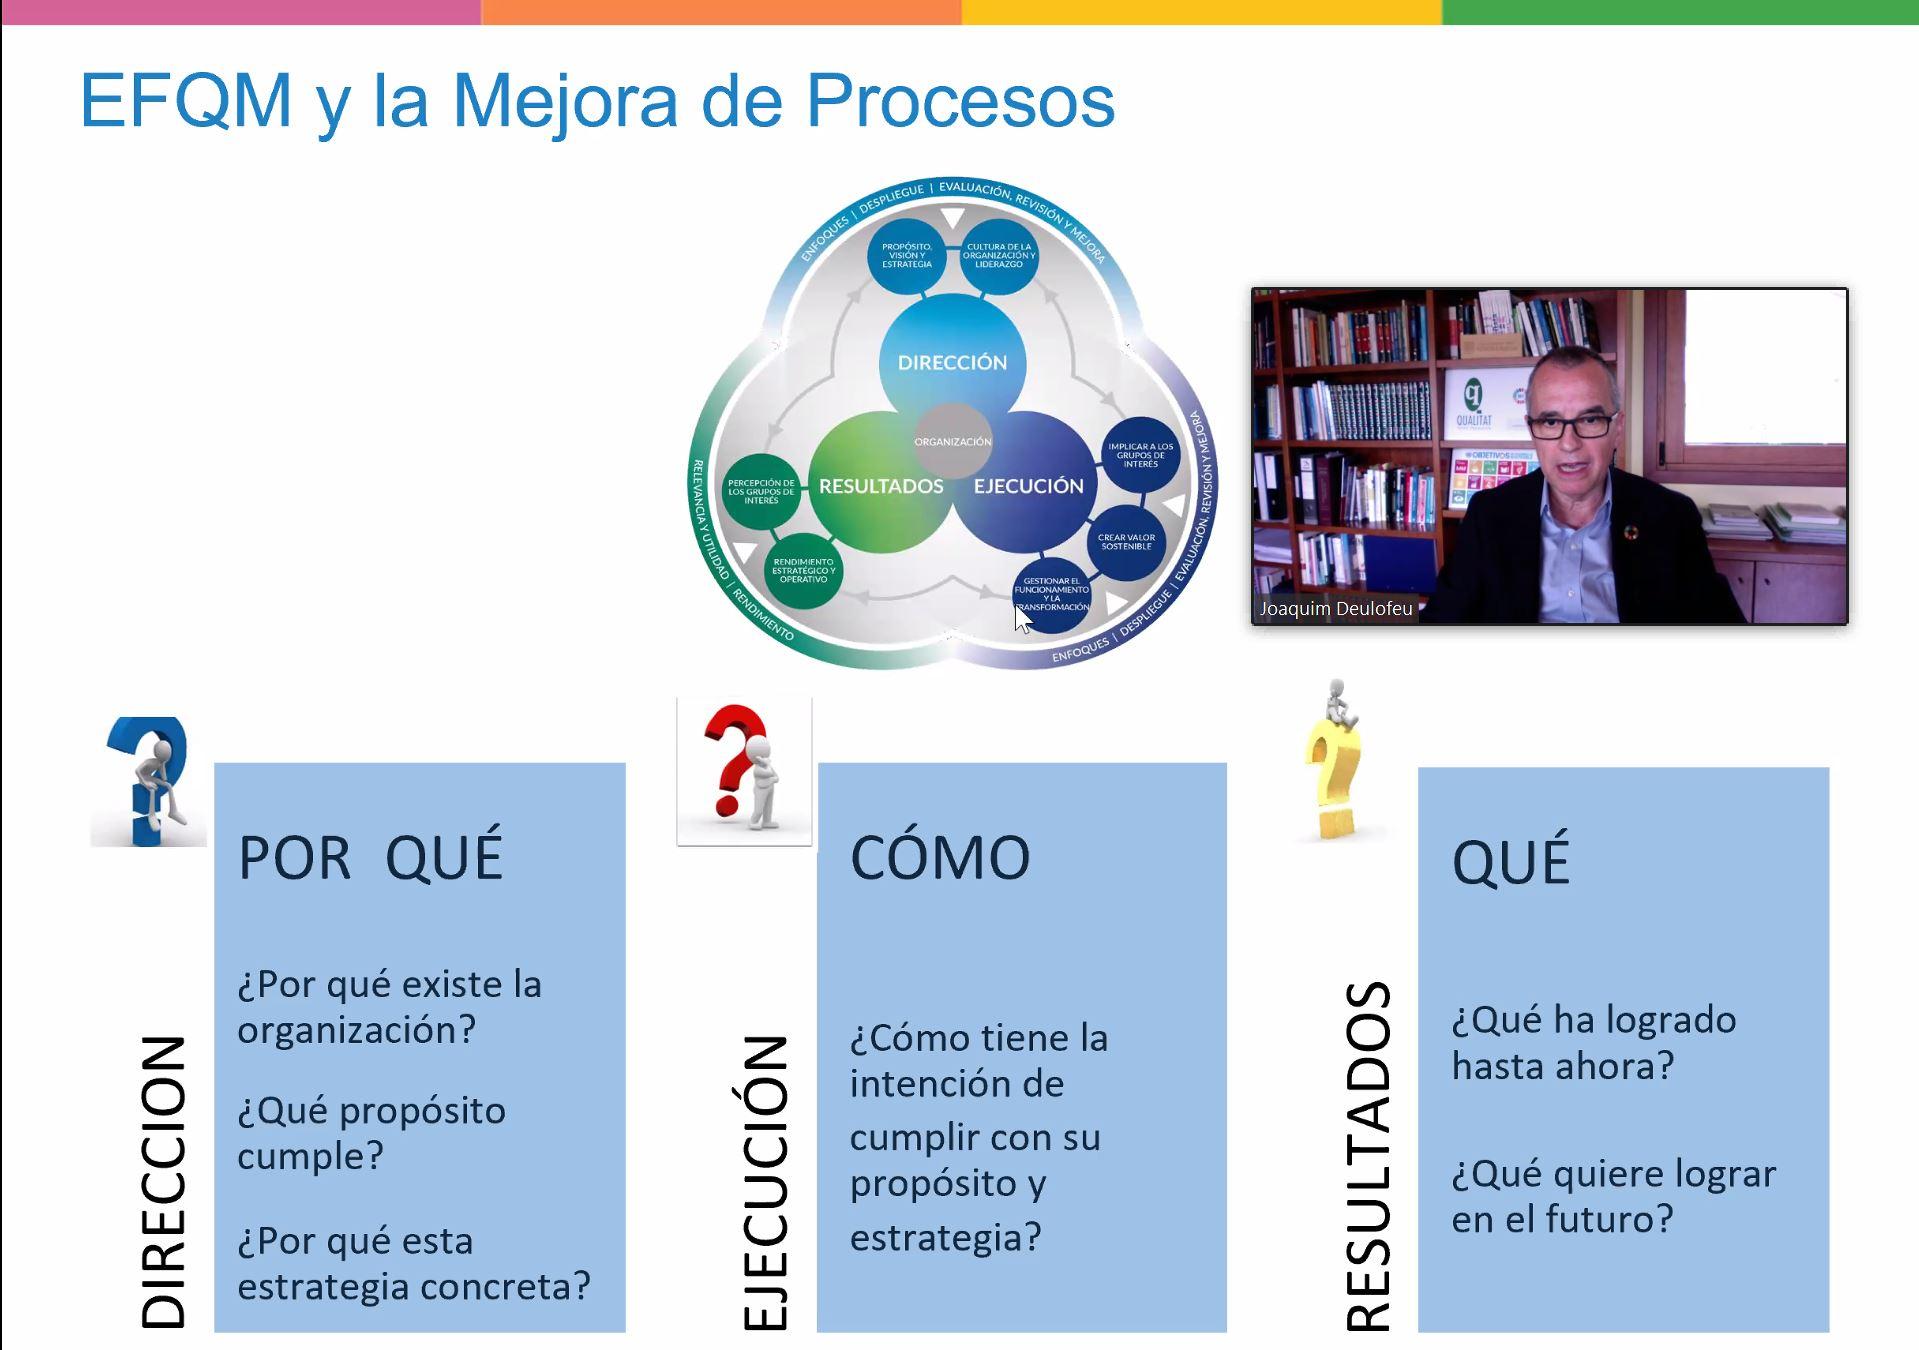 Webinar: Metodología de mejora de los procesos, Business Process management (BPM)